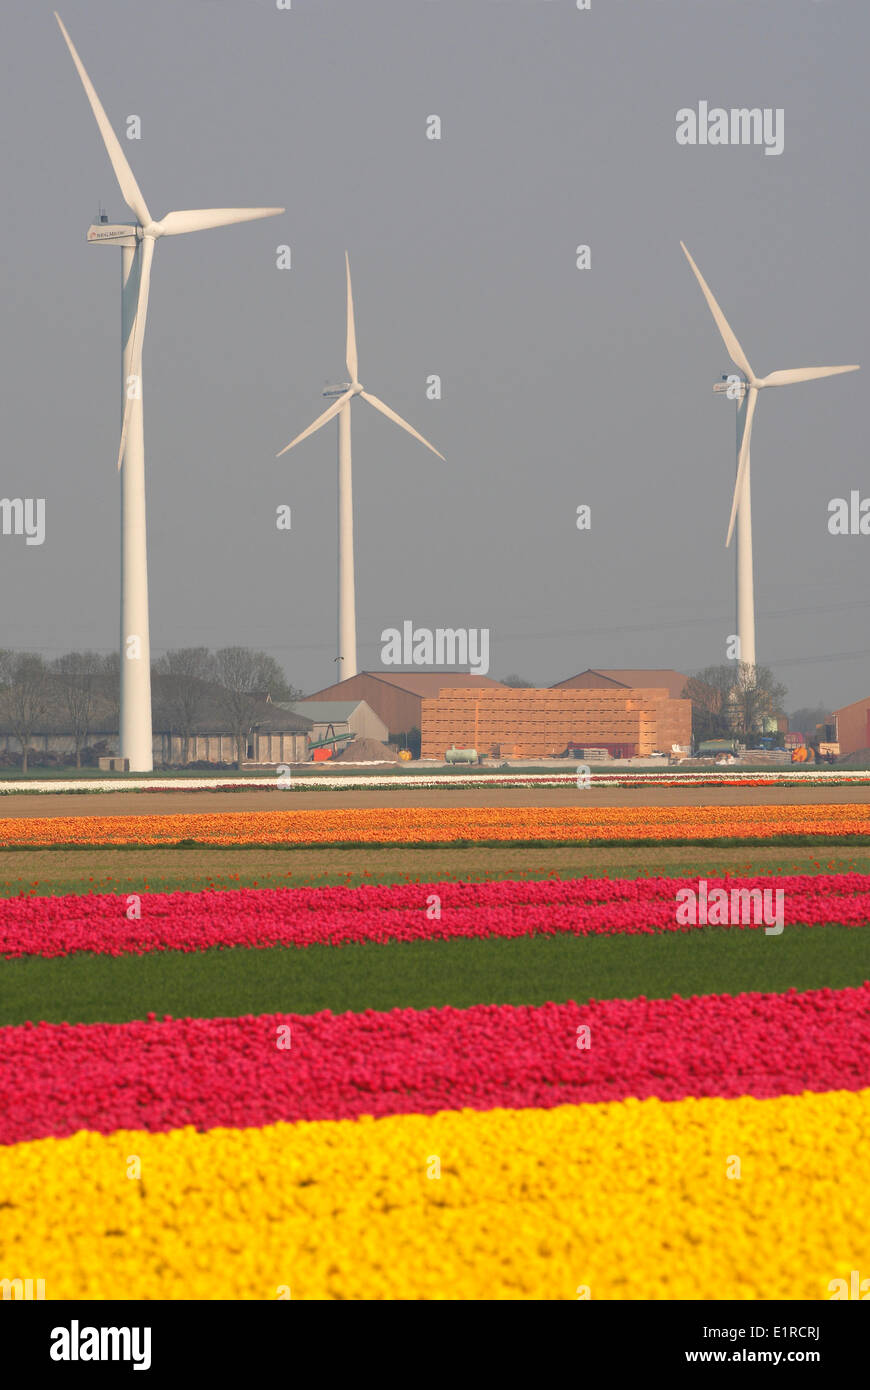 La culture des tulipes, vue sur les champs avec différentes couleurs des tulipes, des moulins à vent à l'arrière-plan Banque D'Images